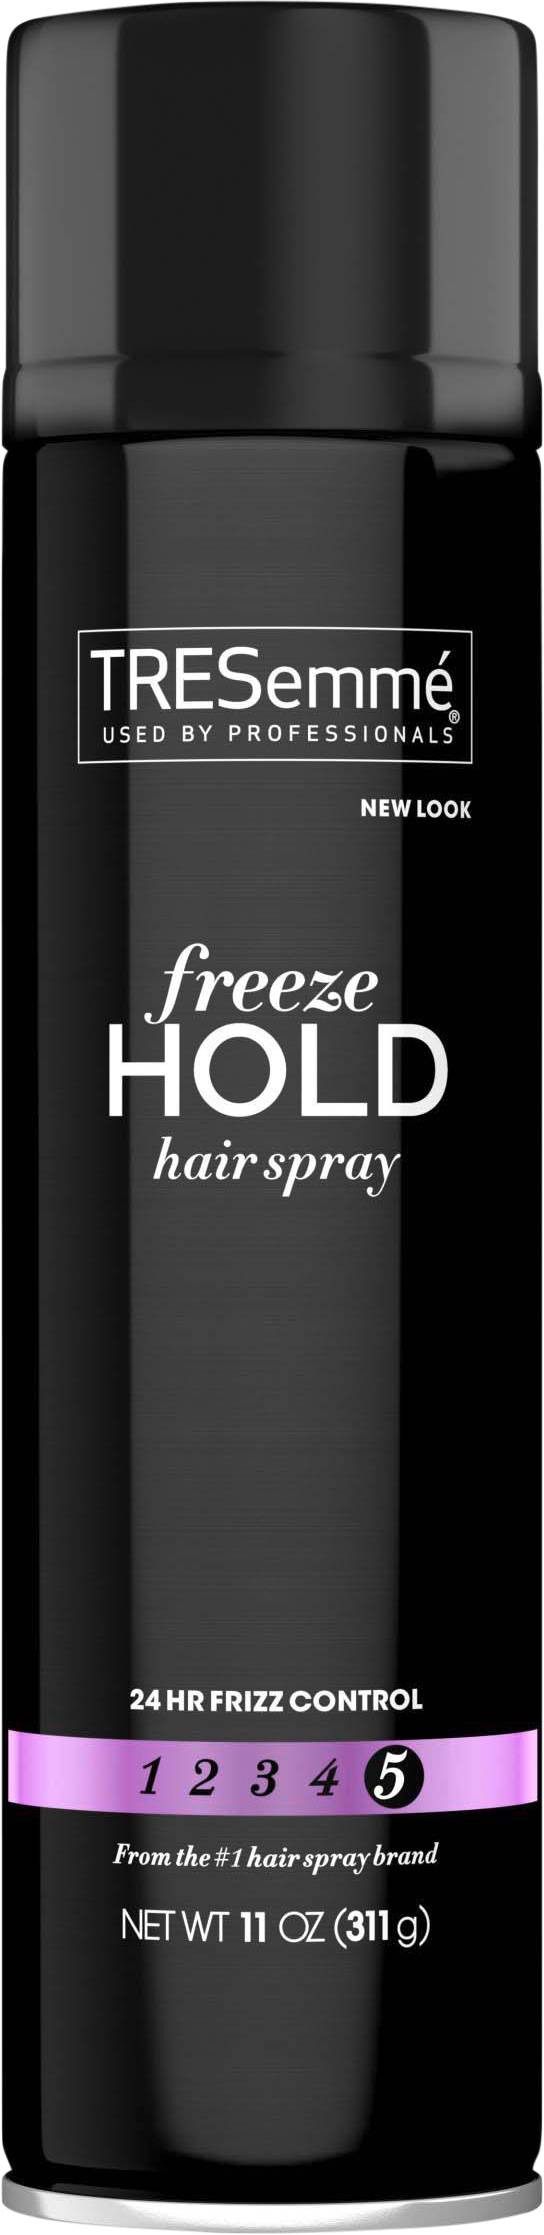 Tresemmé 5 Freeze Hold Hair Spray